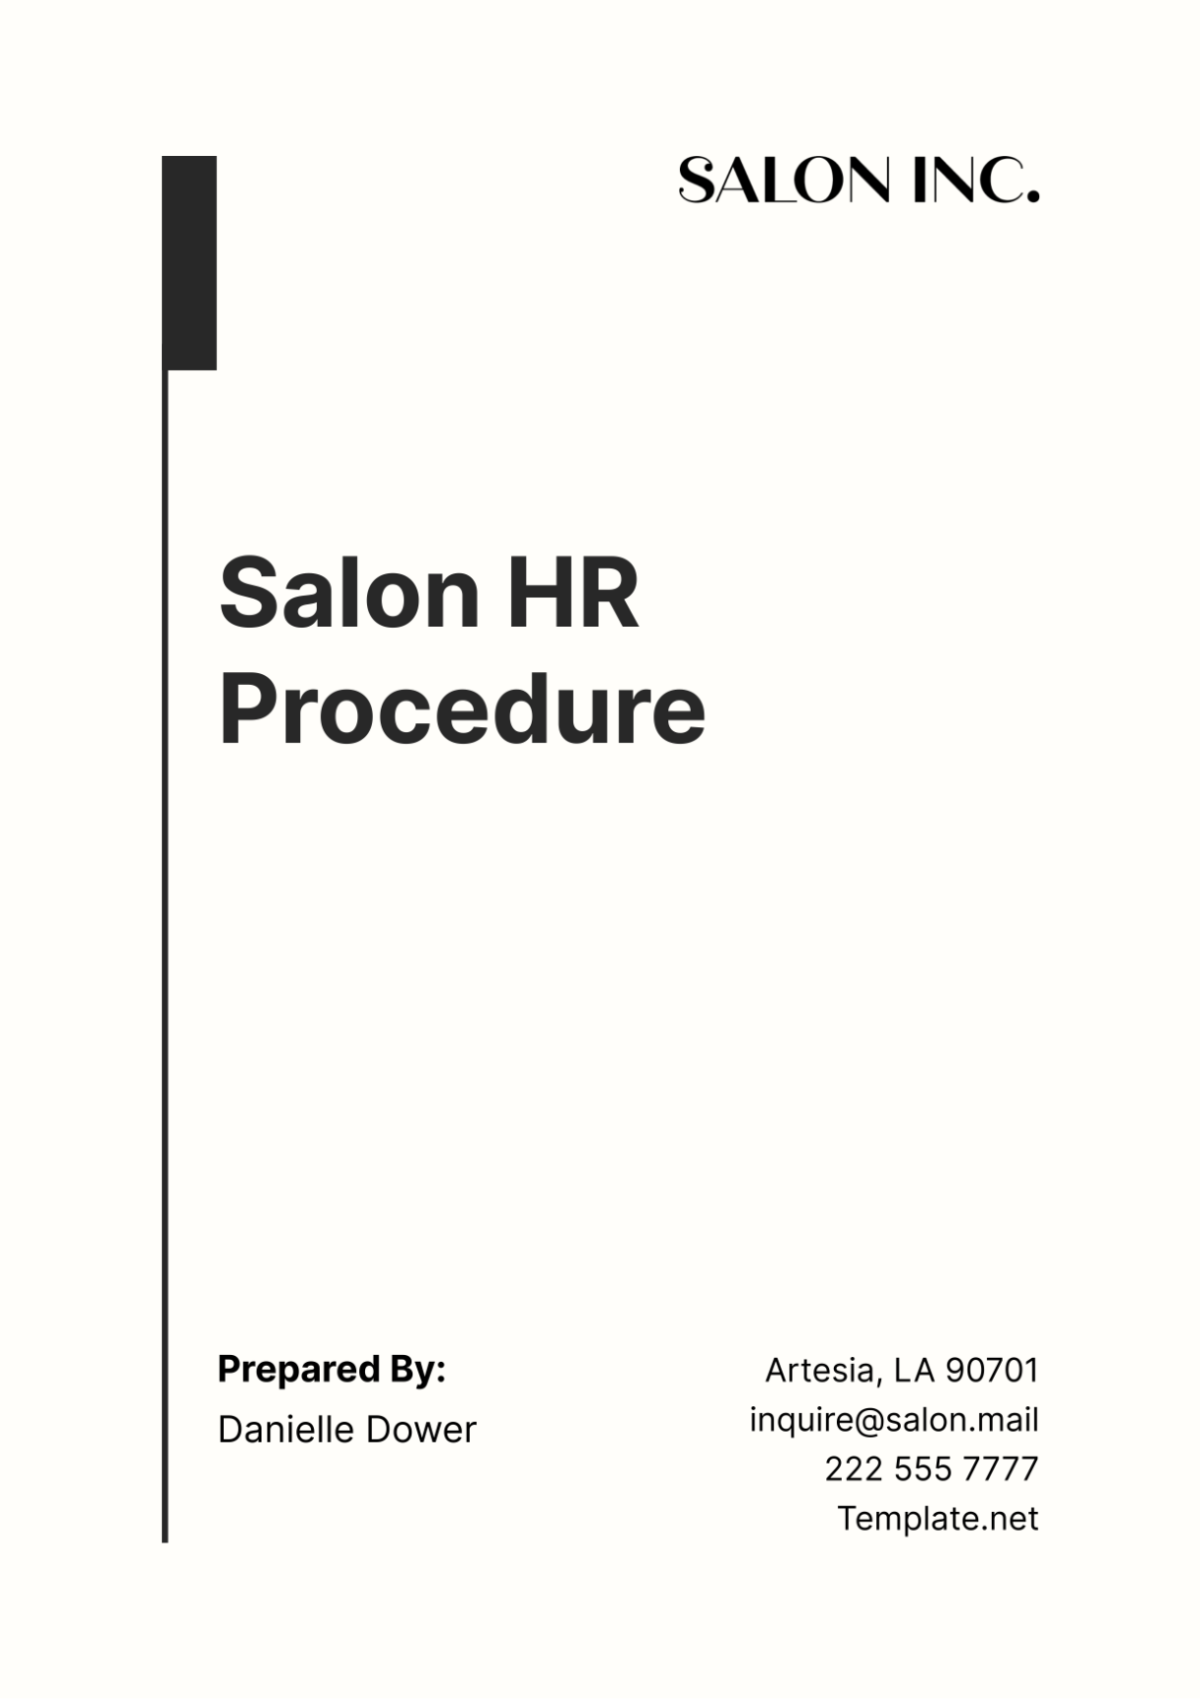 Salon HR Procedure Template